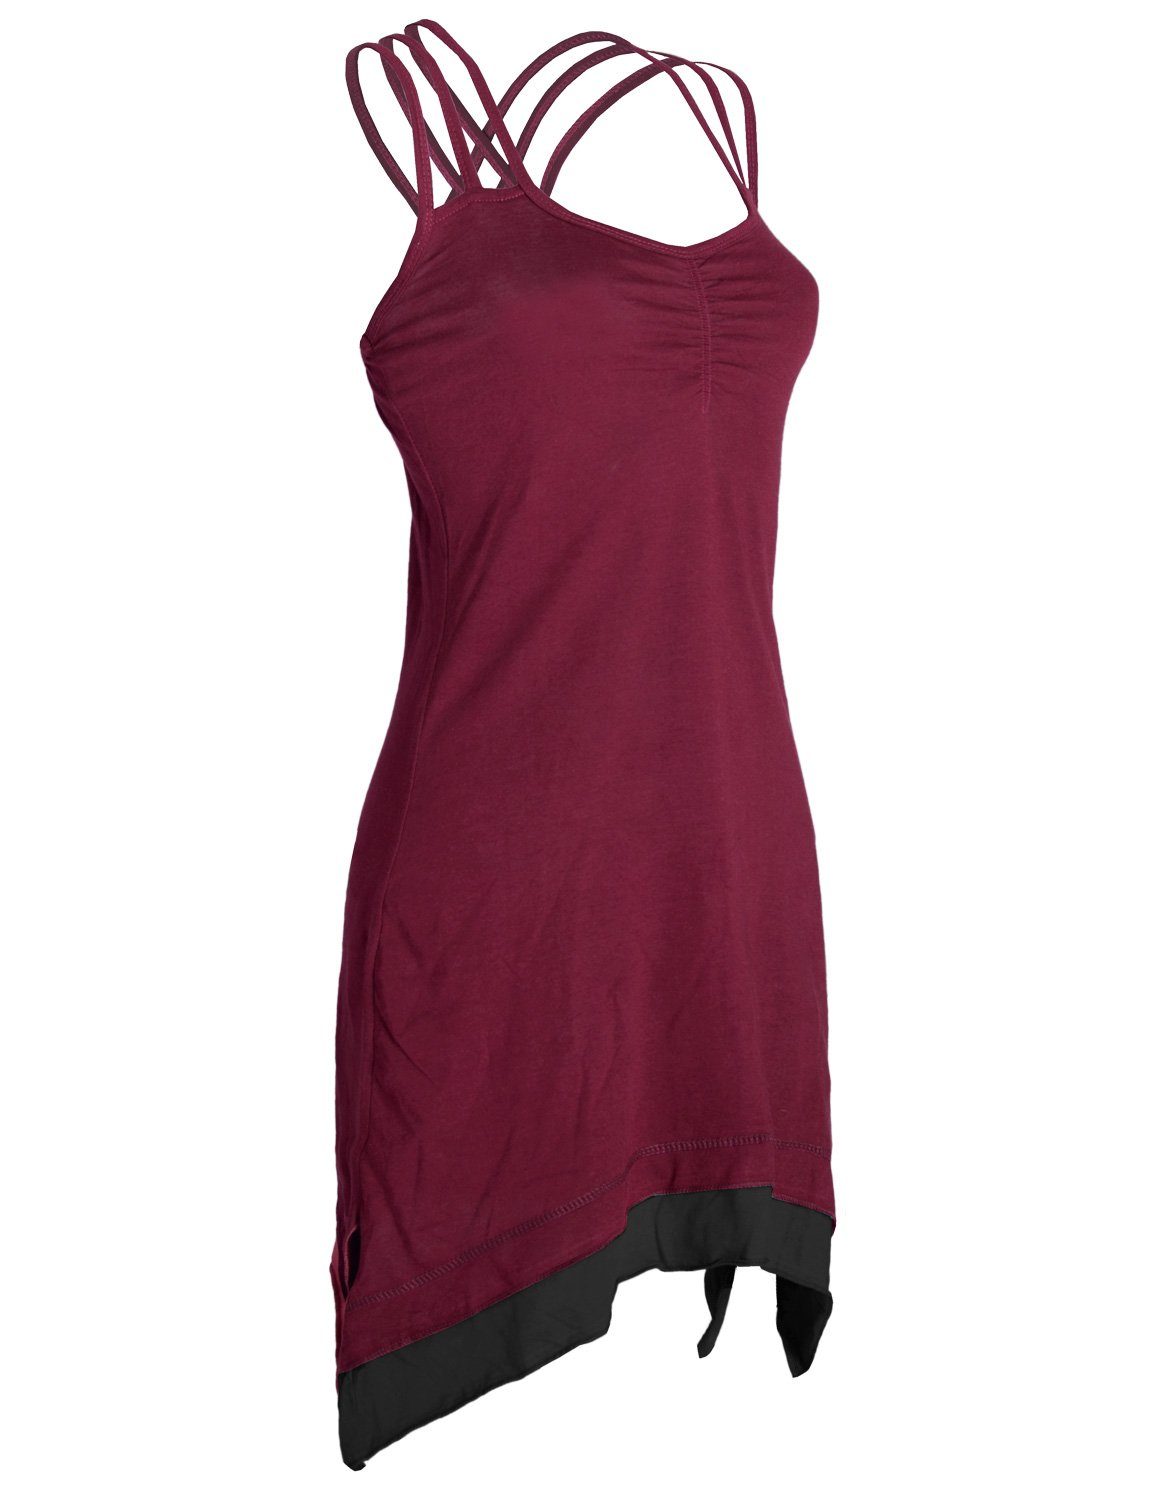 Vishes Trägerkleid Zipfeln dunkelrot Lagenlook Organic Cotton mit Sommerkleid Elfen, Style Boho Hippie,